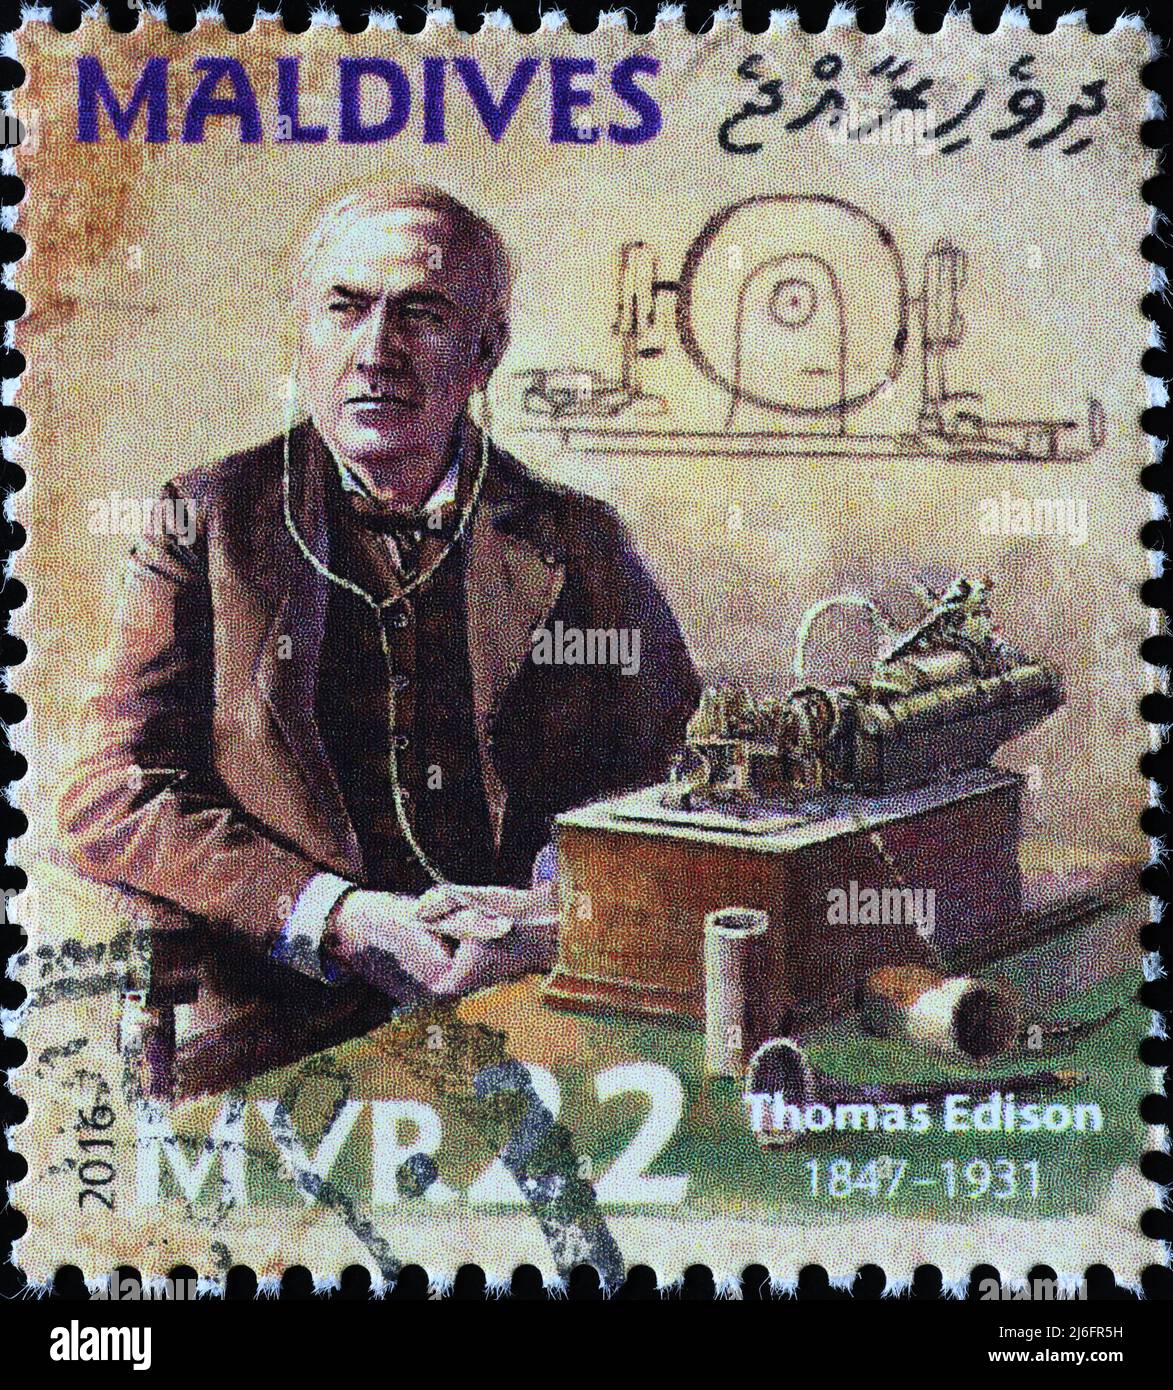 Portrait de Thomas Edison sur le timbre des Maldives Banque D'Images